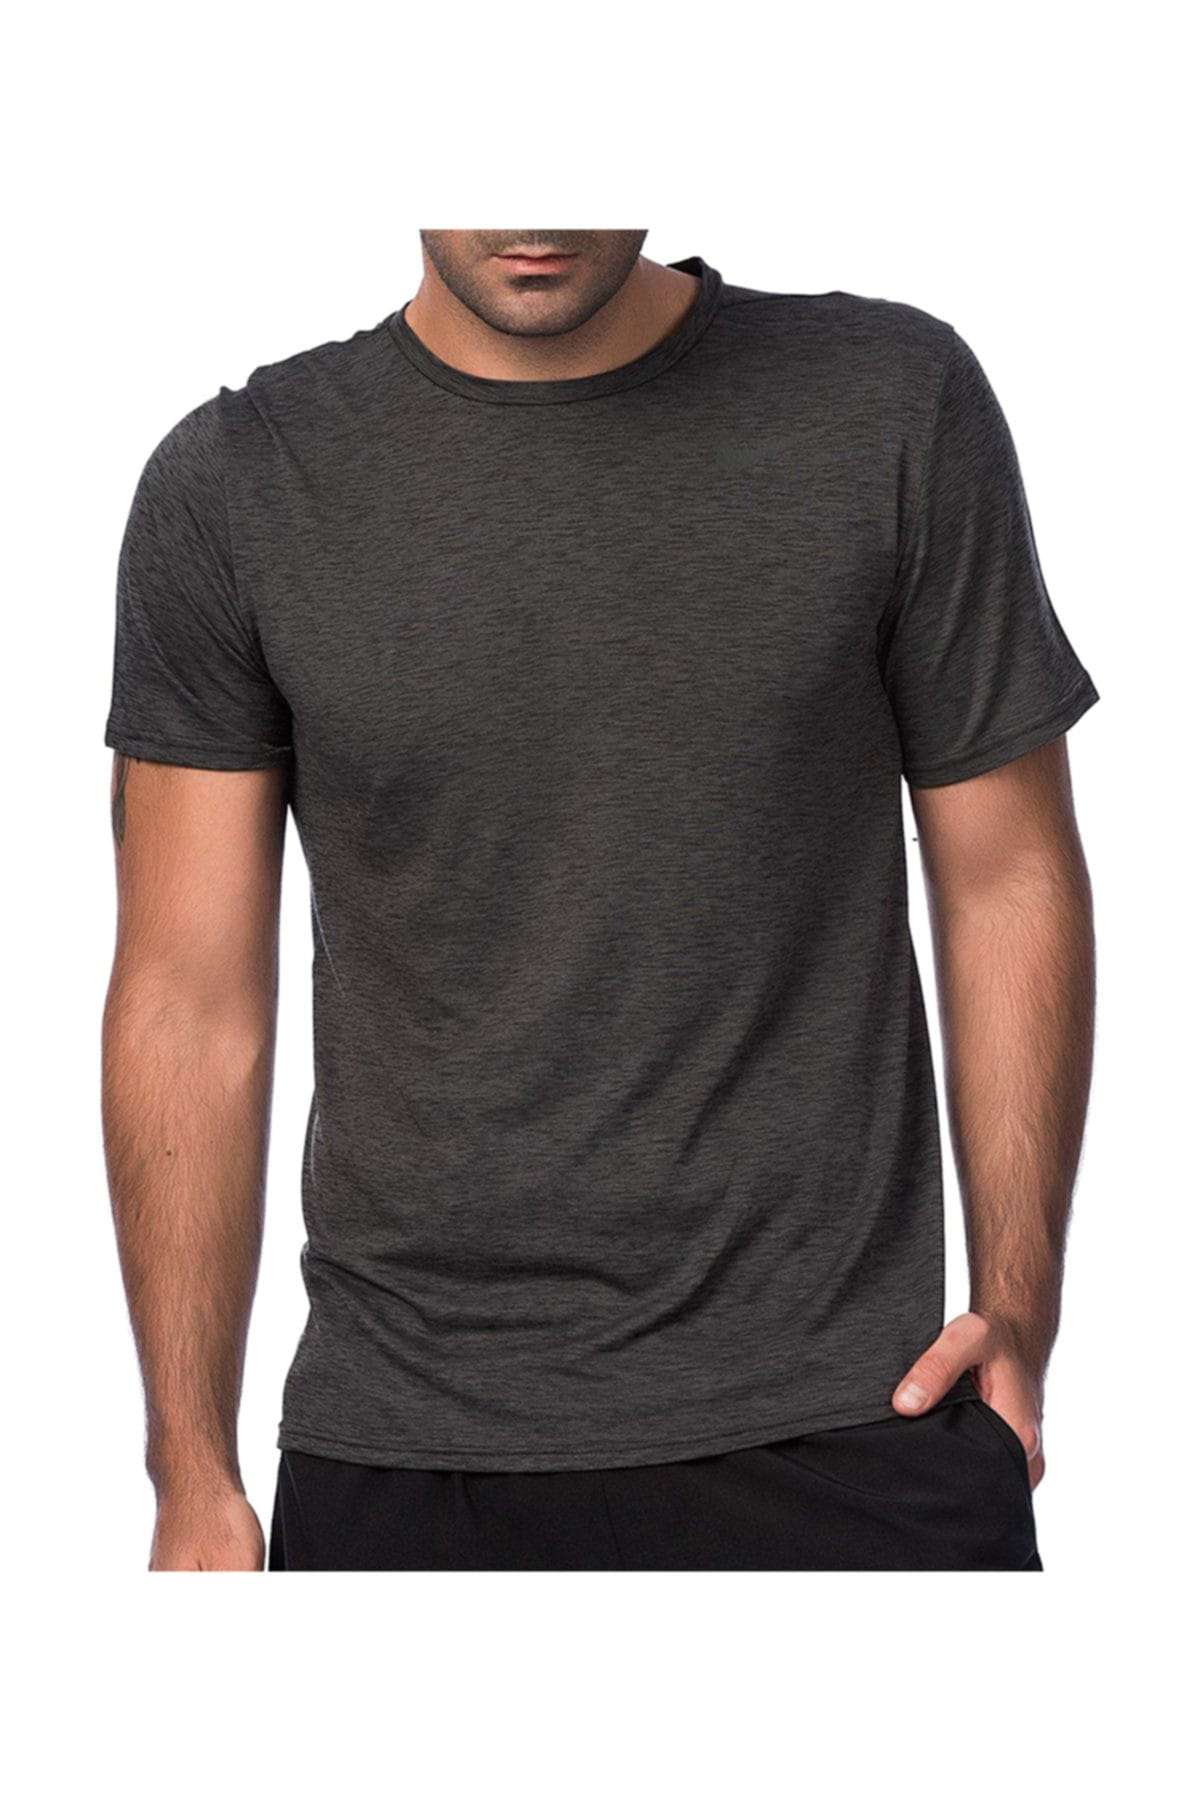 Nike Erkek T-shirt - M Nk Brt Top Ss Hpr Dry - 832835-010